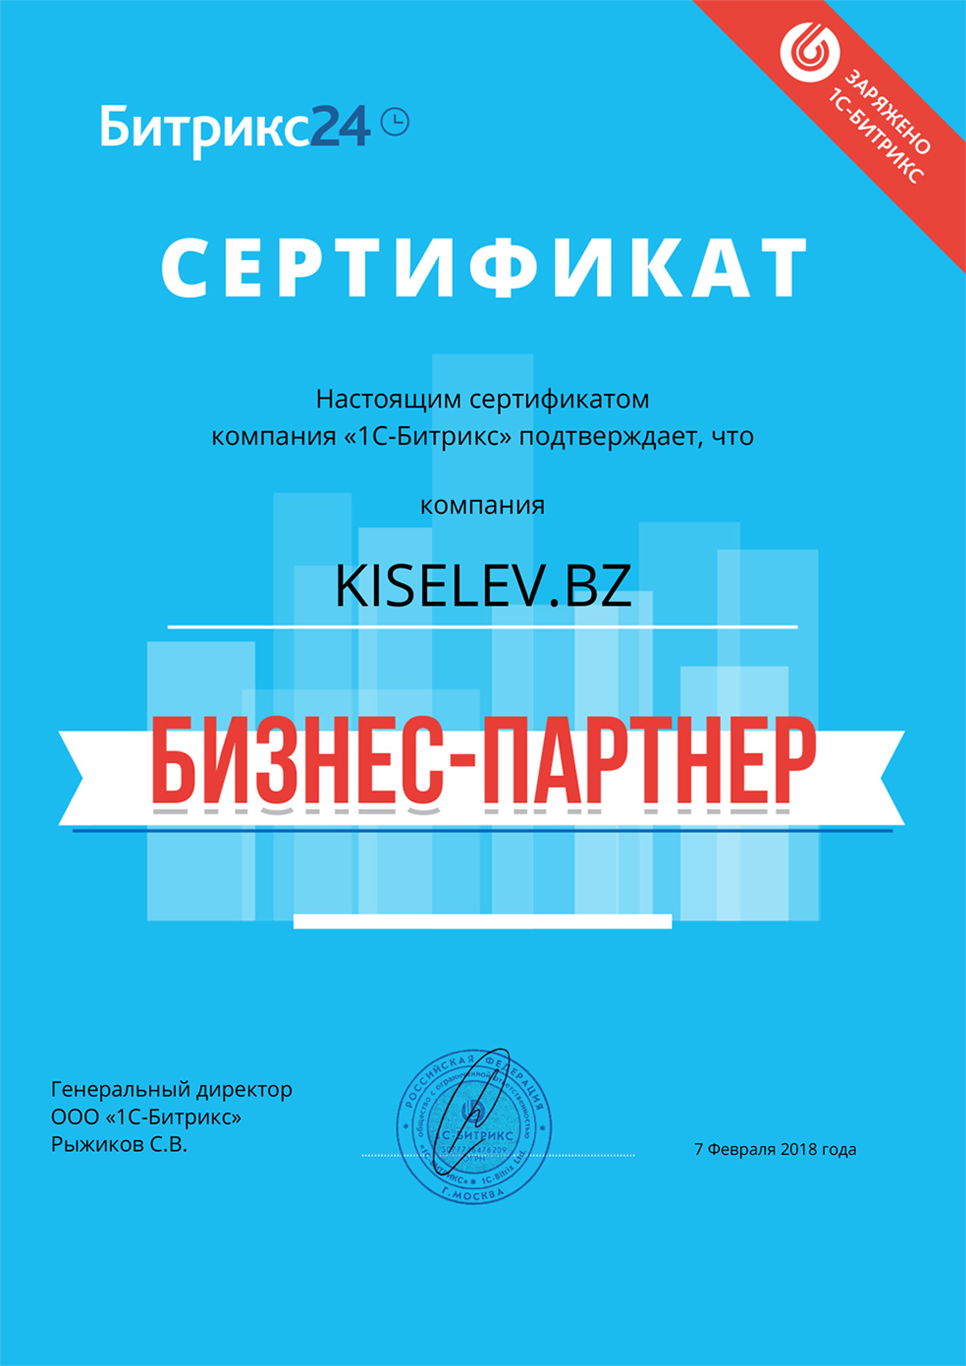 Сертификат партнёра по АМОСРМ в Тюмени